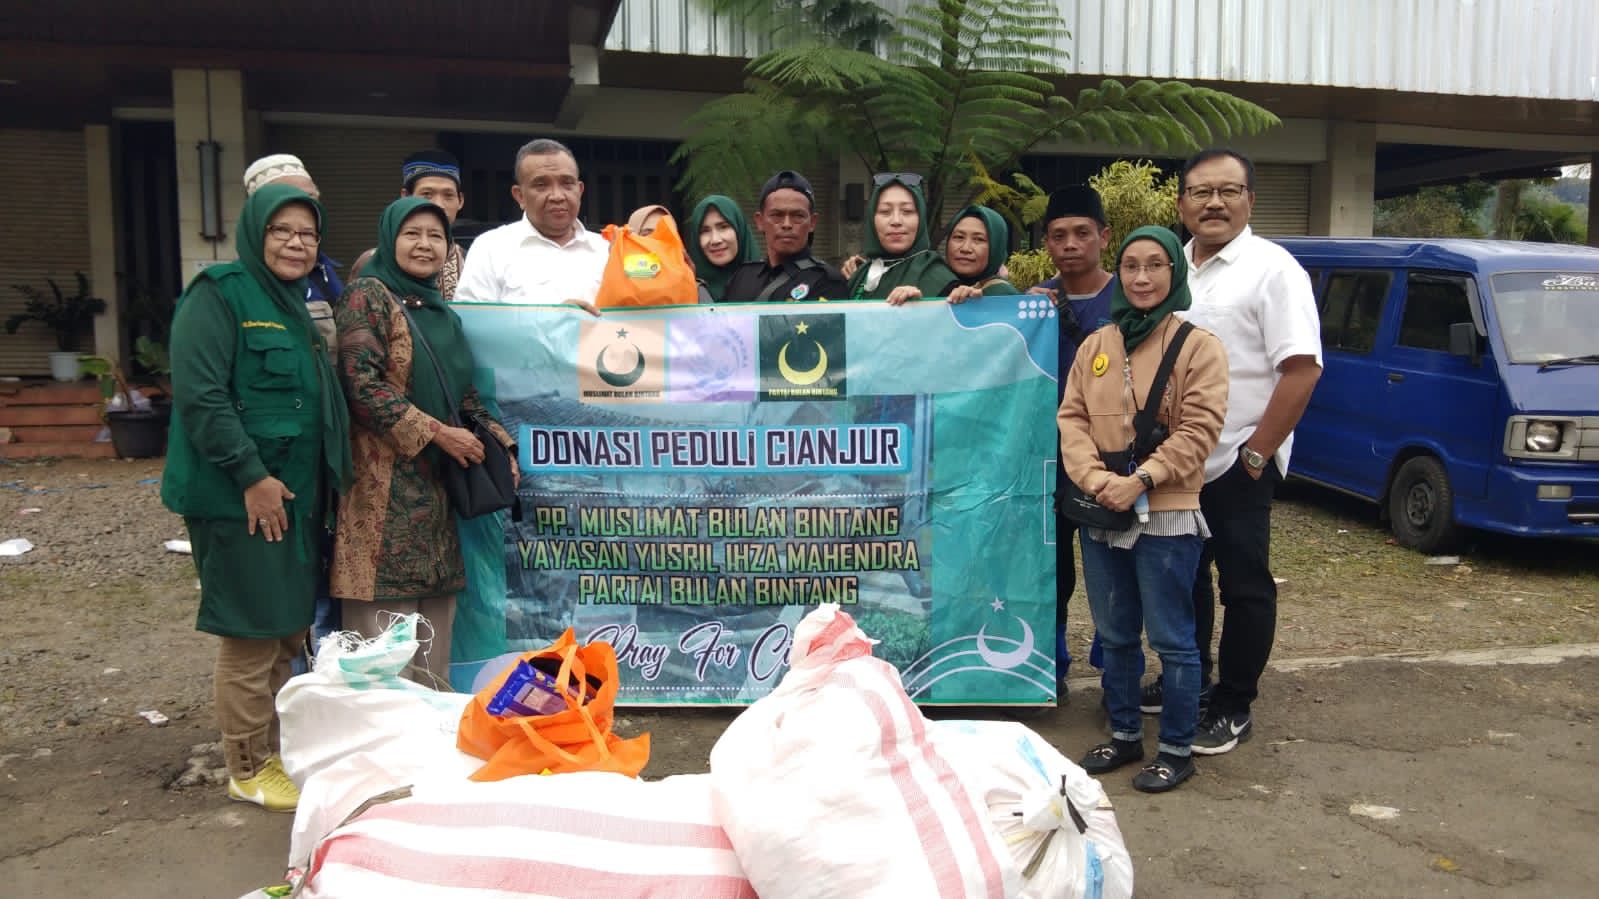 PP Muslimat Bulan Bintang Salurkan Bantuan Ke Korban Terdampak Gempa Cianjur